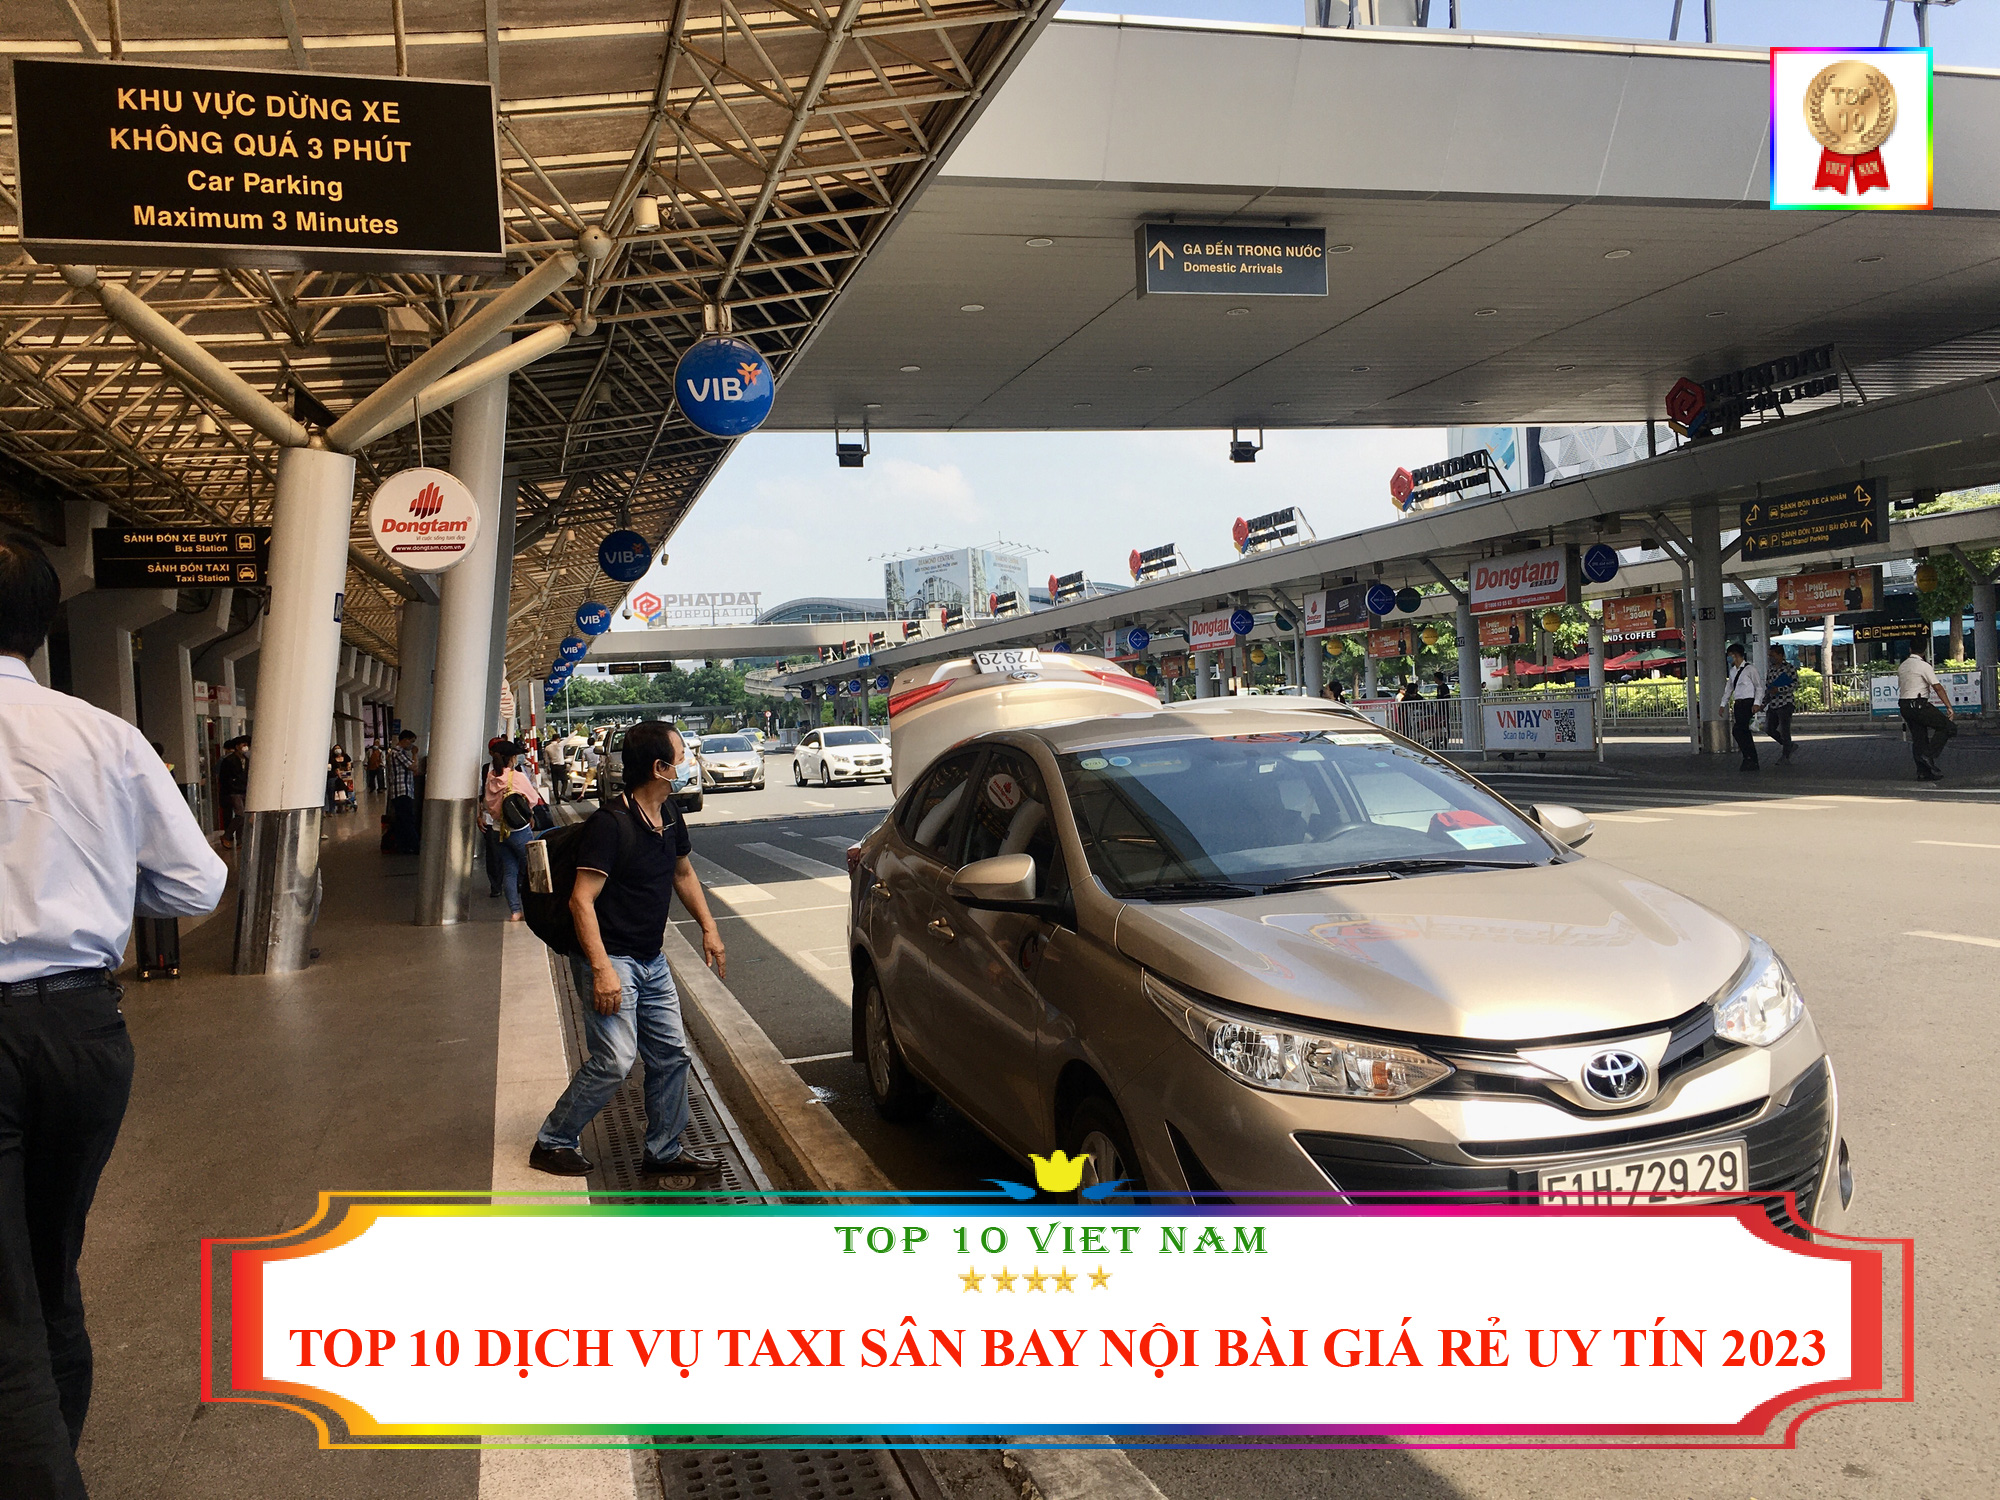 Top 10 Dịch Vụ Taxi Sân Bay Nội Bài Giá Rẻ Uy Tín 